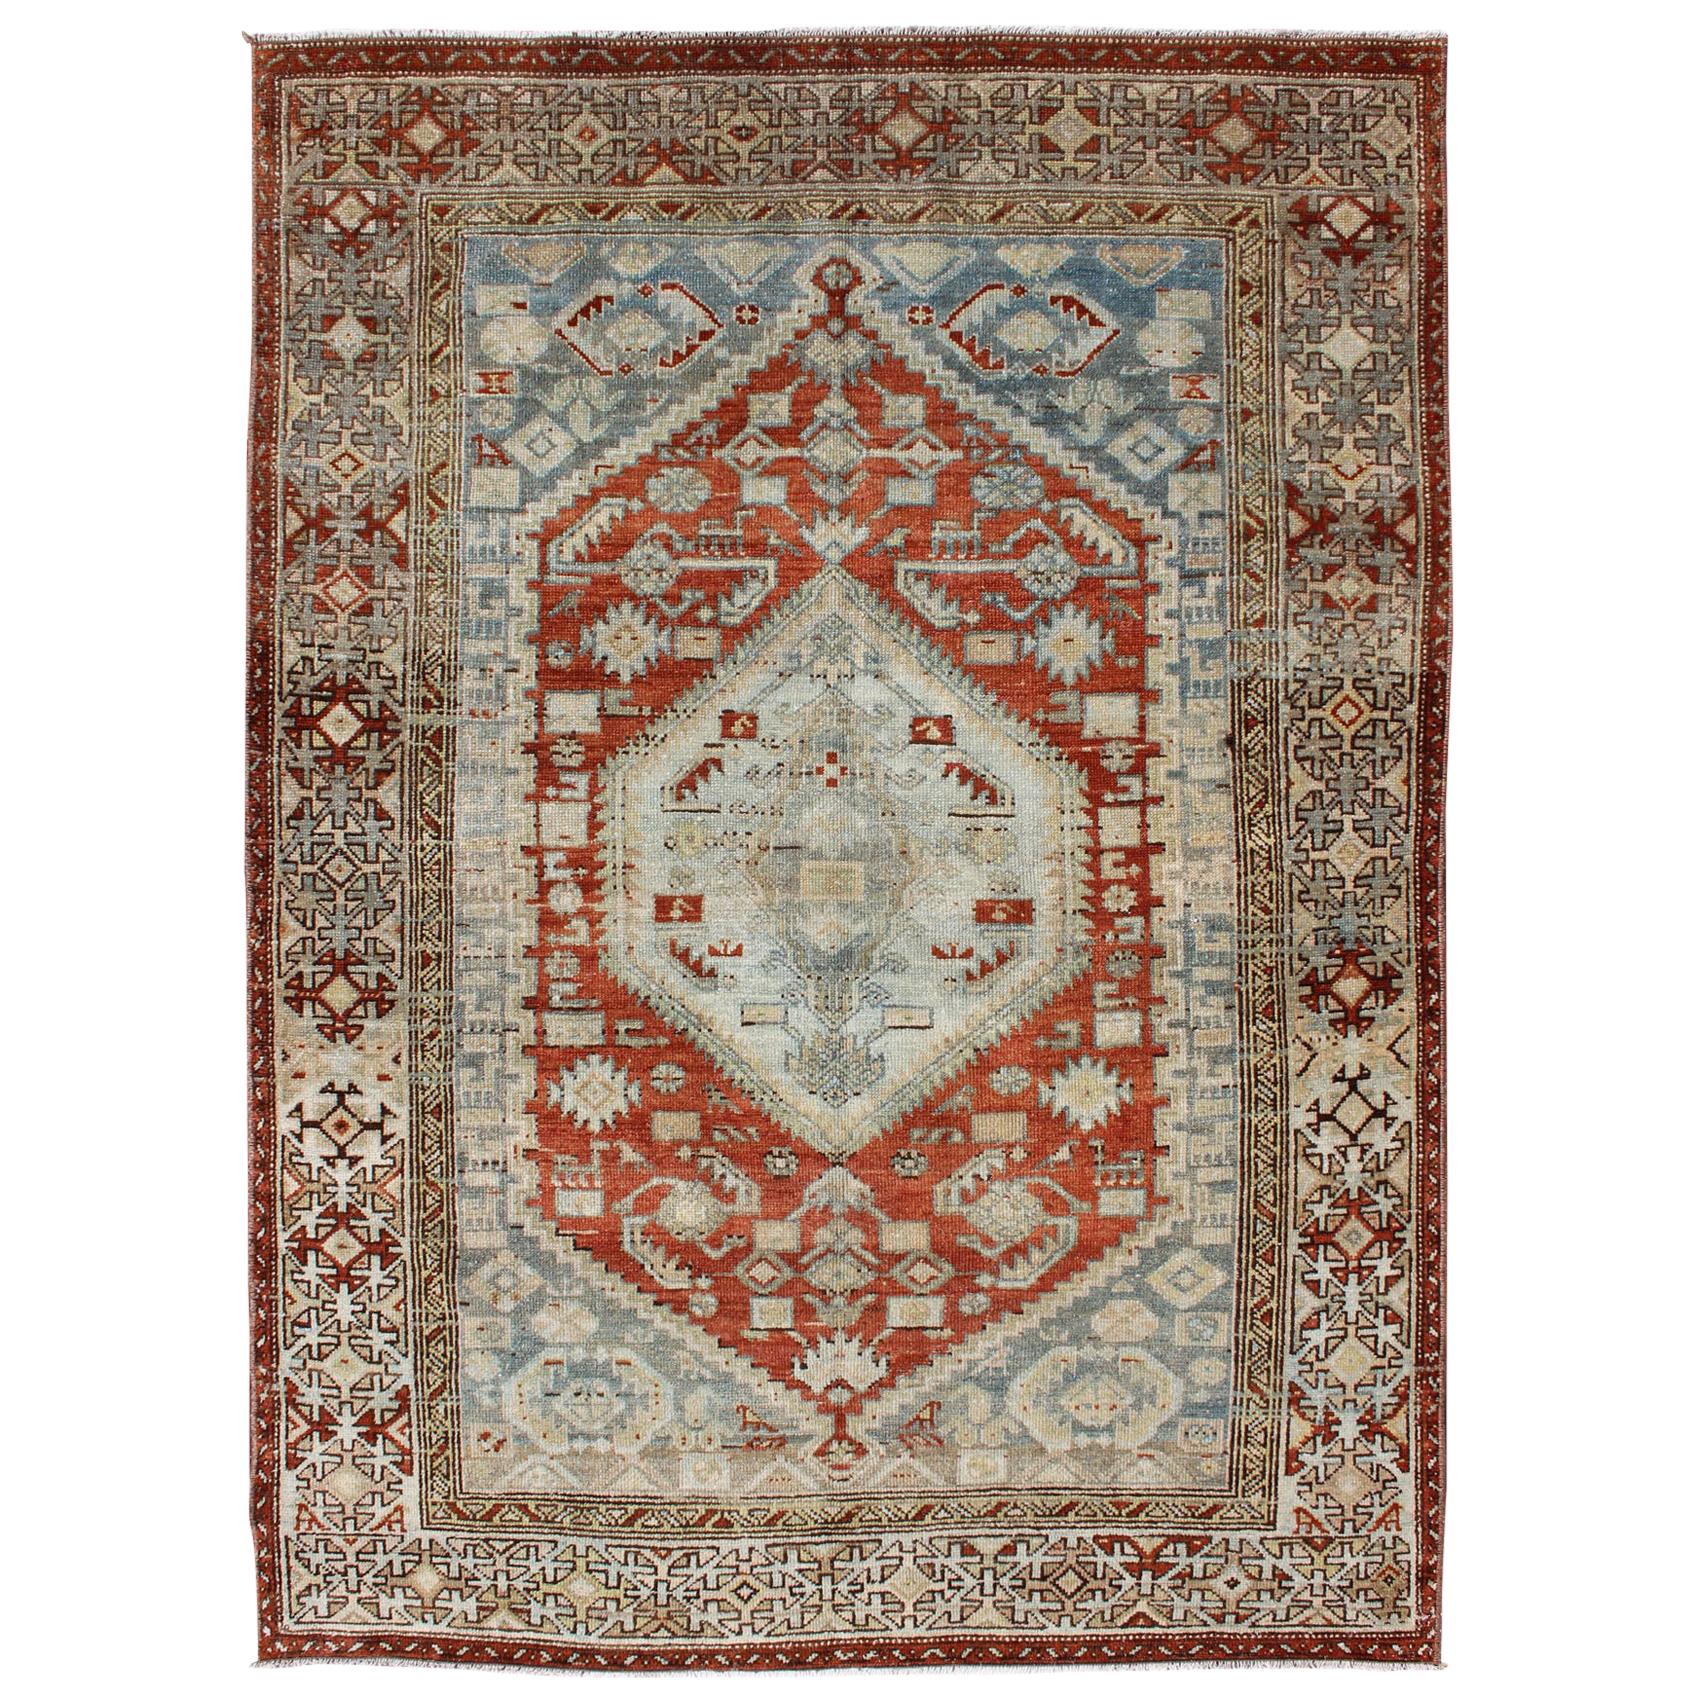 Orange-roter:: hellgrauer/blauer antiker persischer Malayer-Teppich mit geometrischem Muster